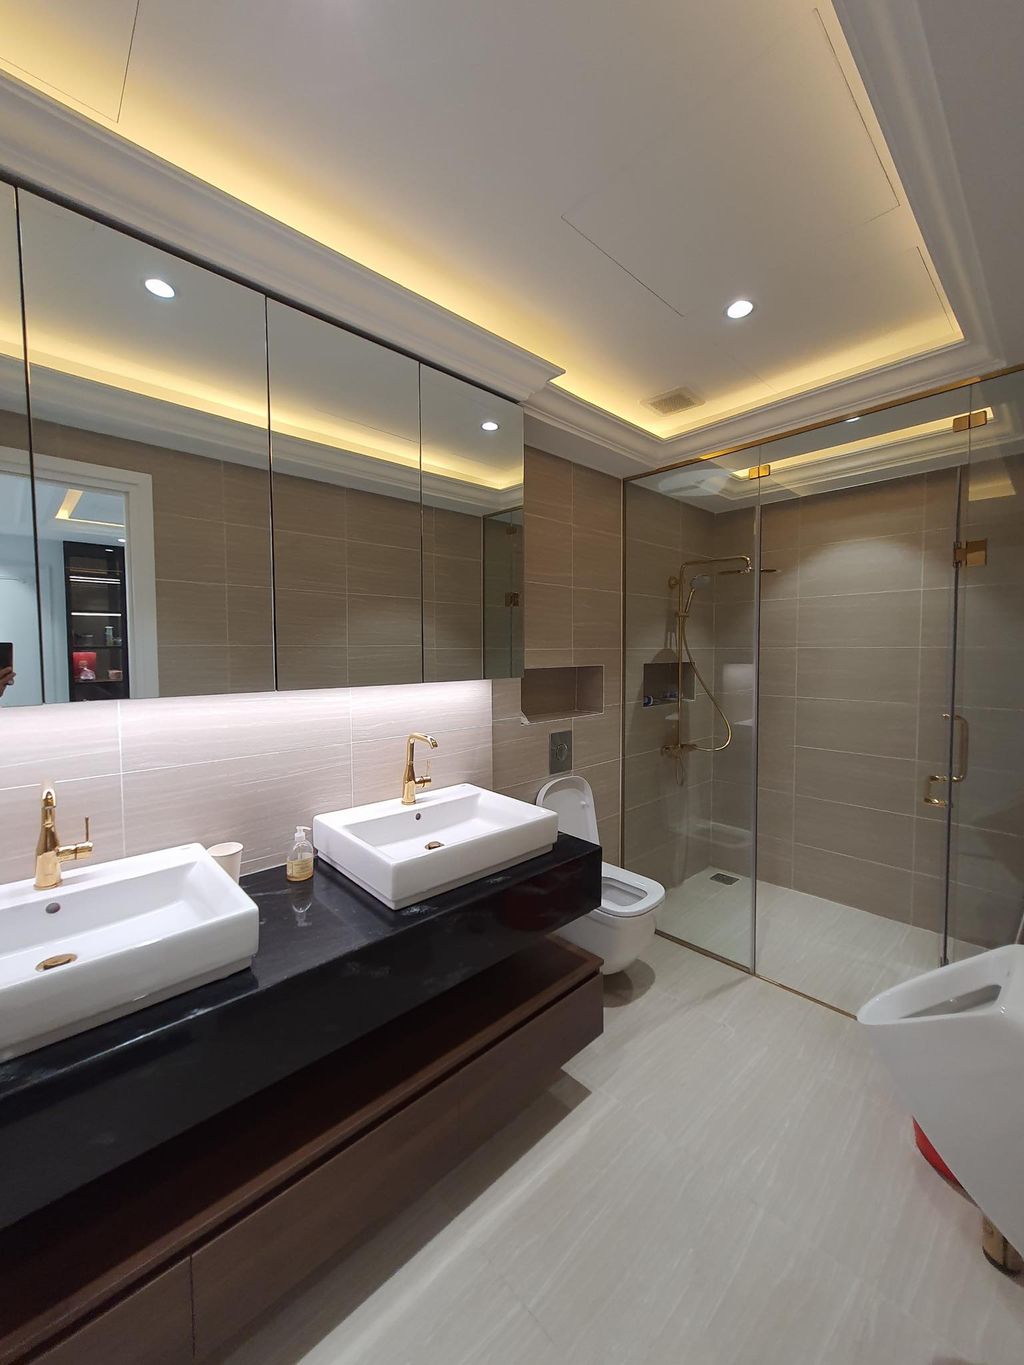 Phòng tắm - Nhà phố thiết kế nội thất cao cấp sang trọng như khách sạn 5 sao  | Space T